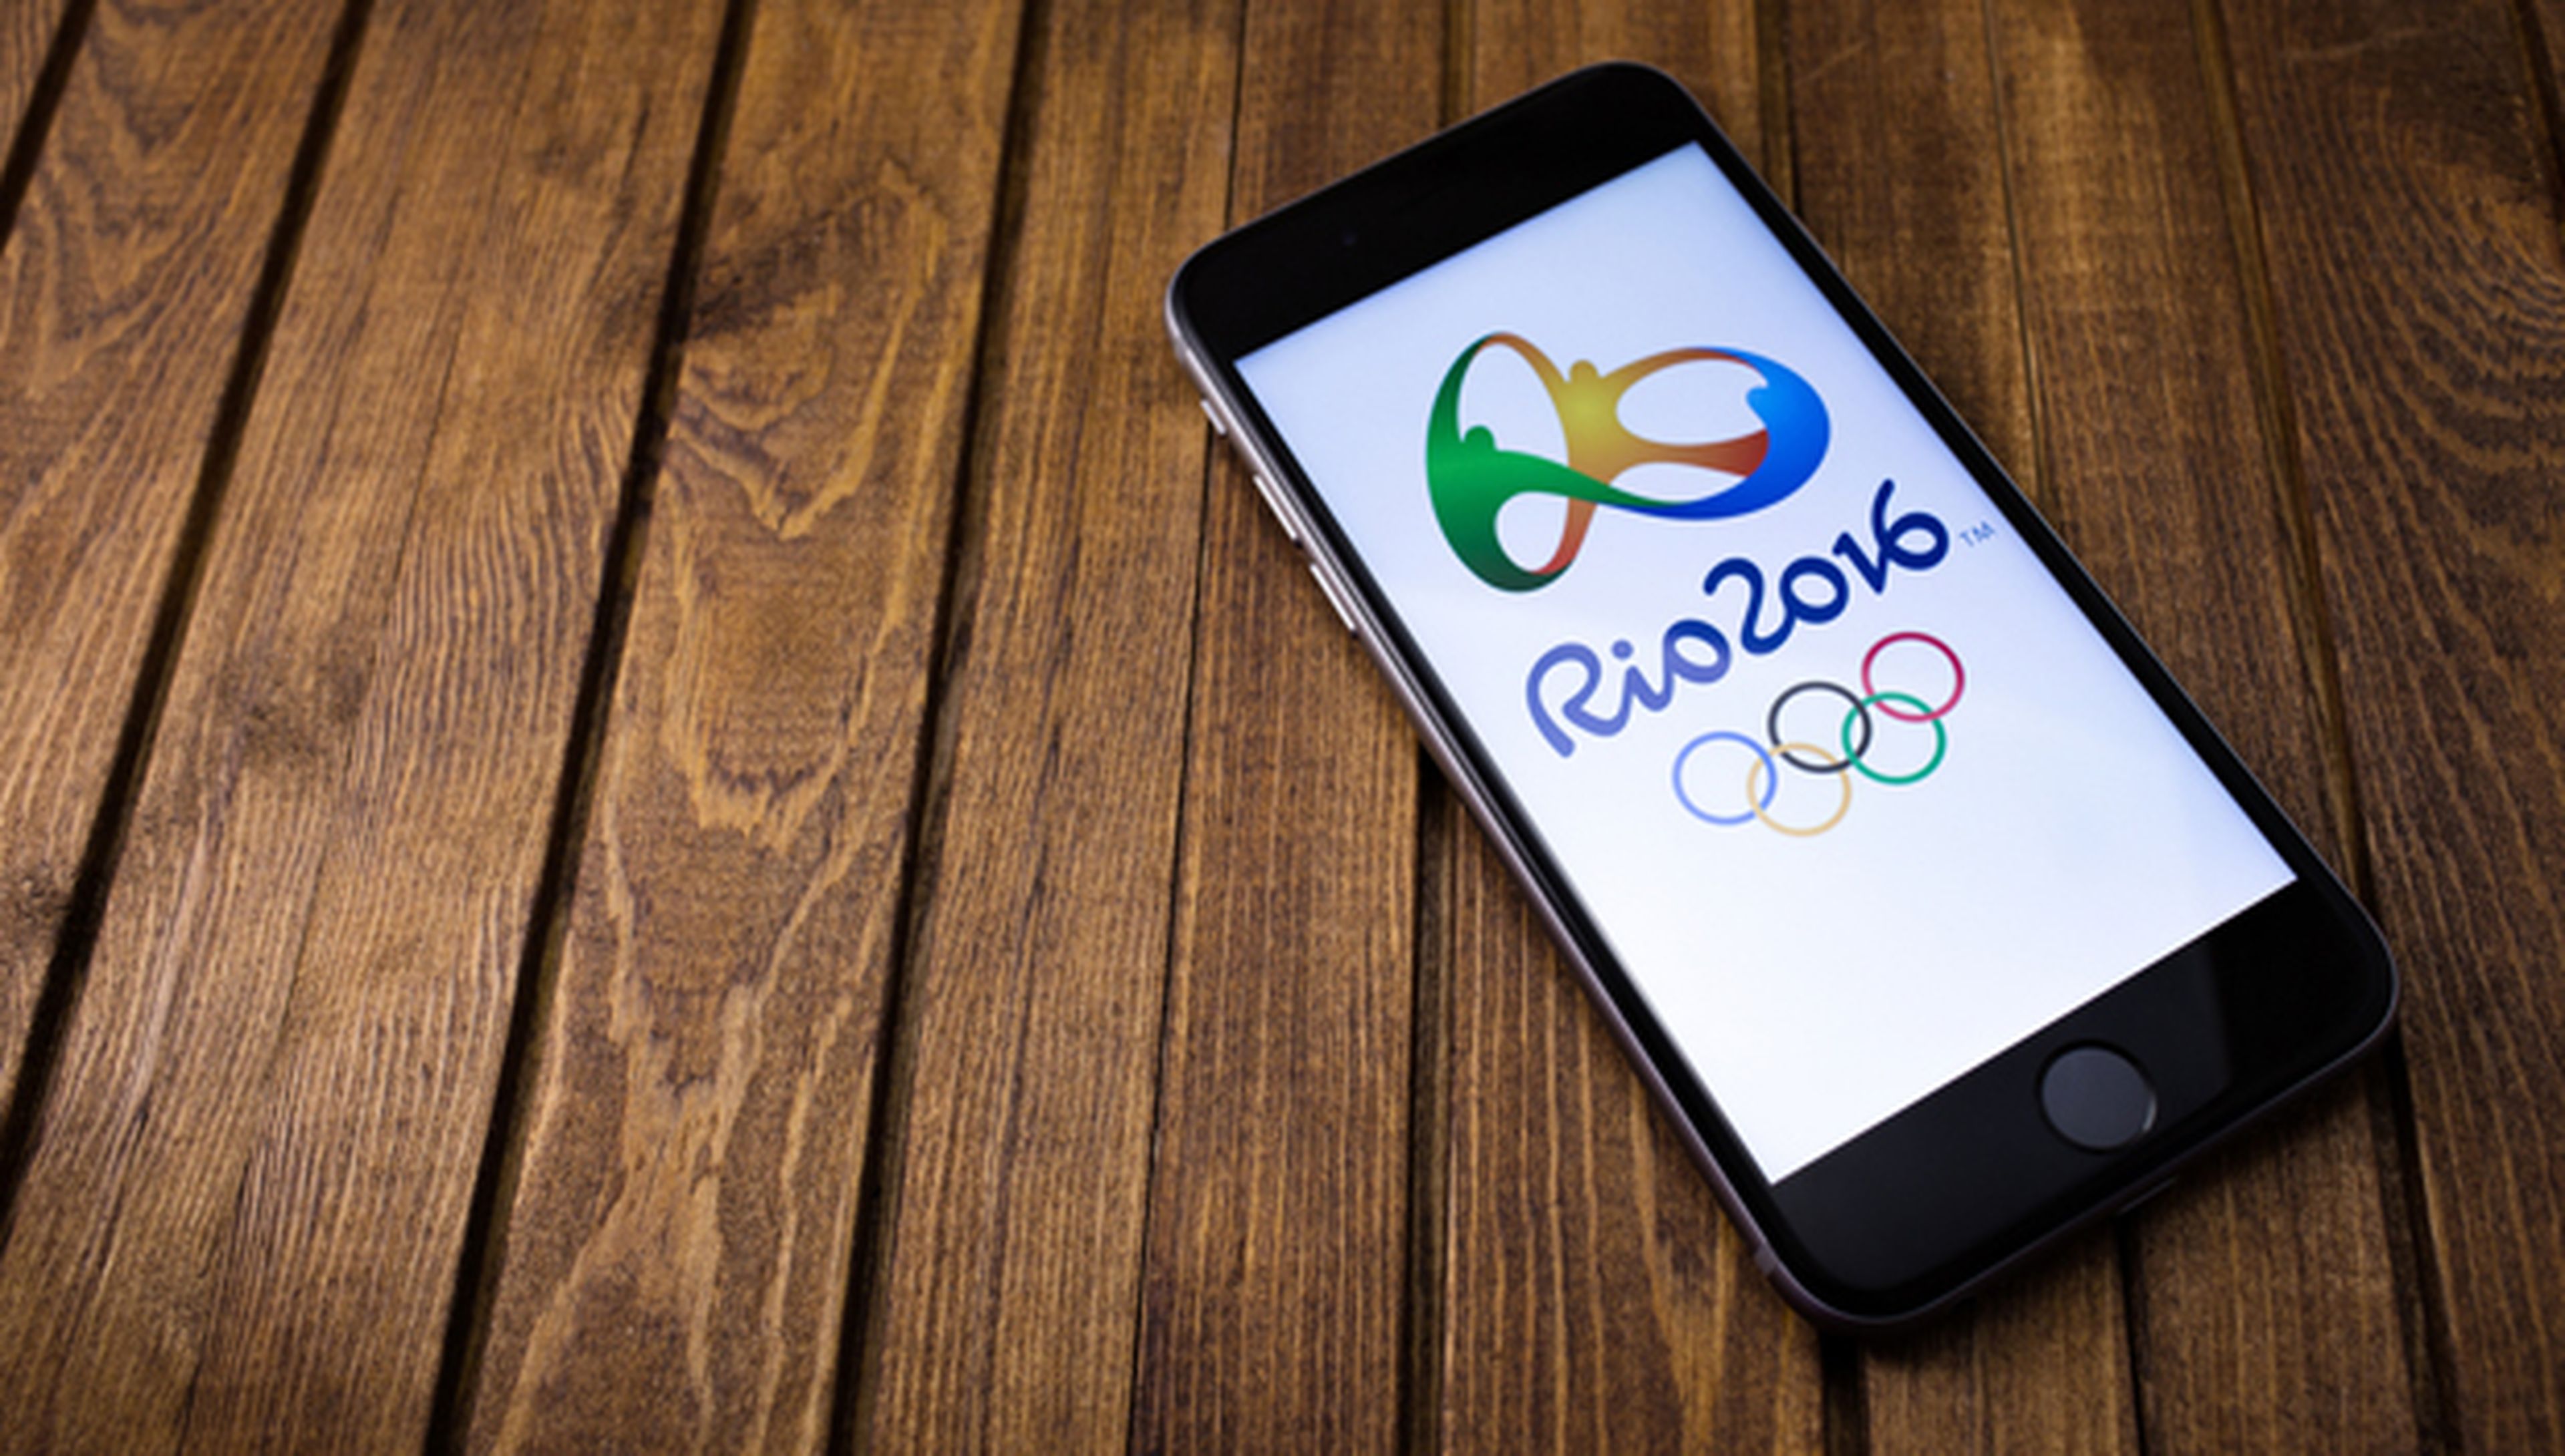 Ver Juegos Rio 2016 en el movil